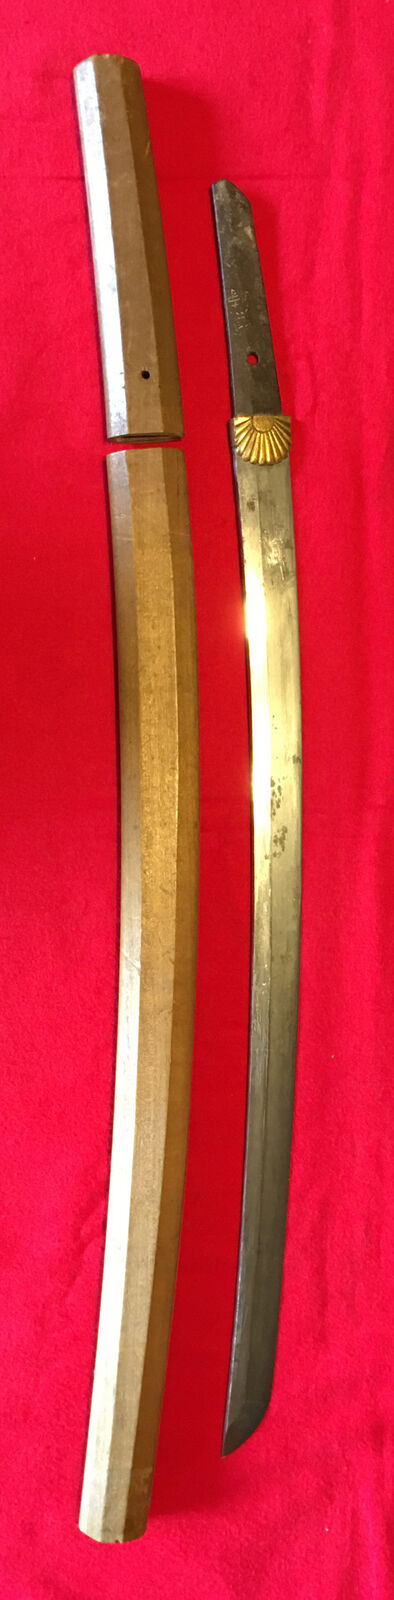 Edo era, Kanekiyo signed, Japanese Wakizashi sword, Shirasaya, Habaki